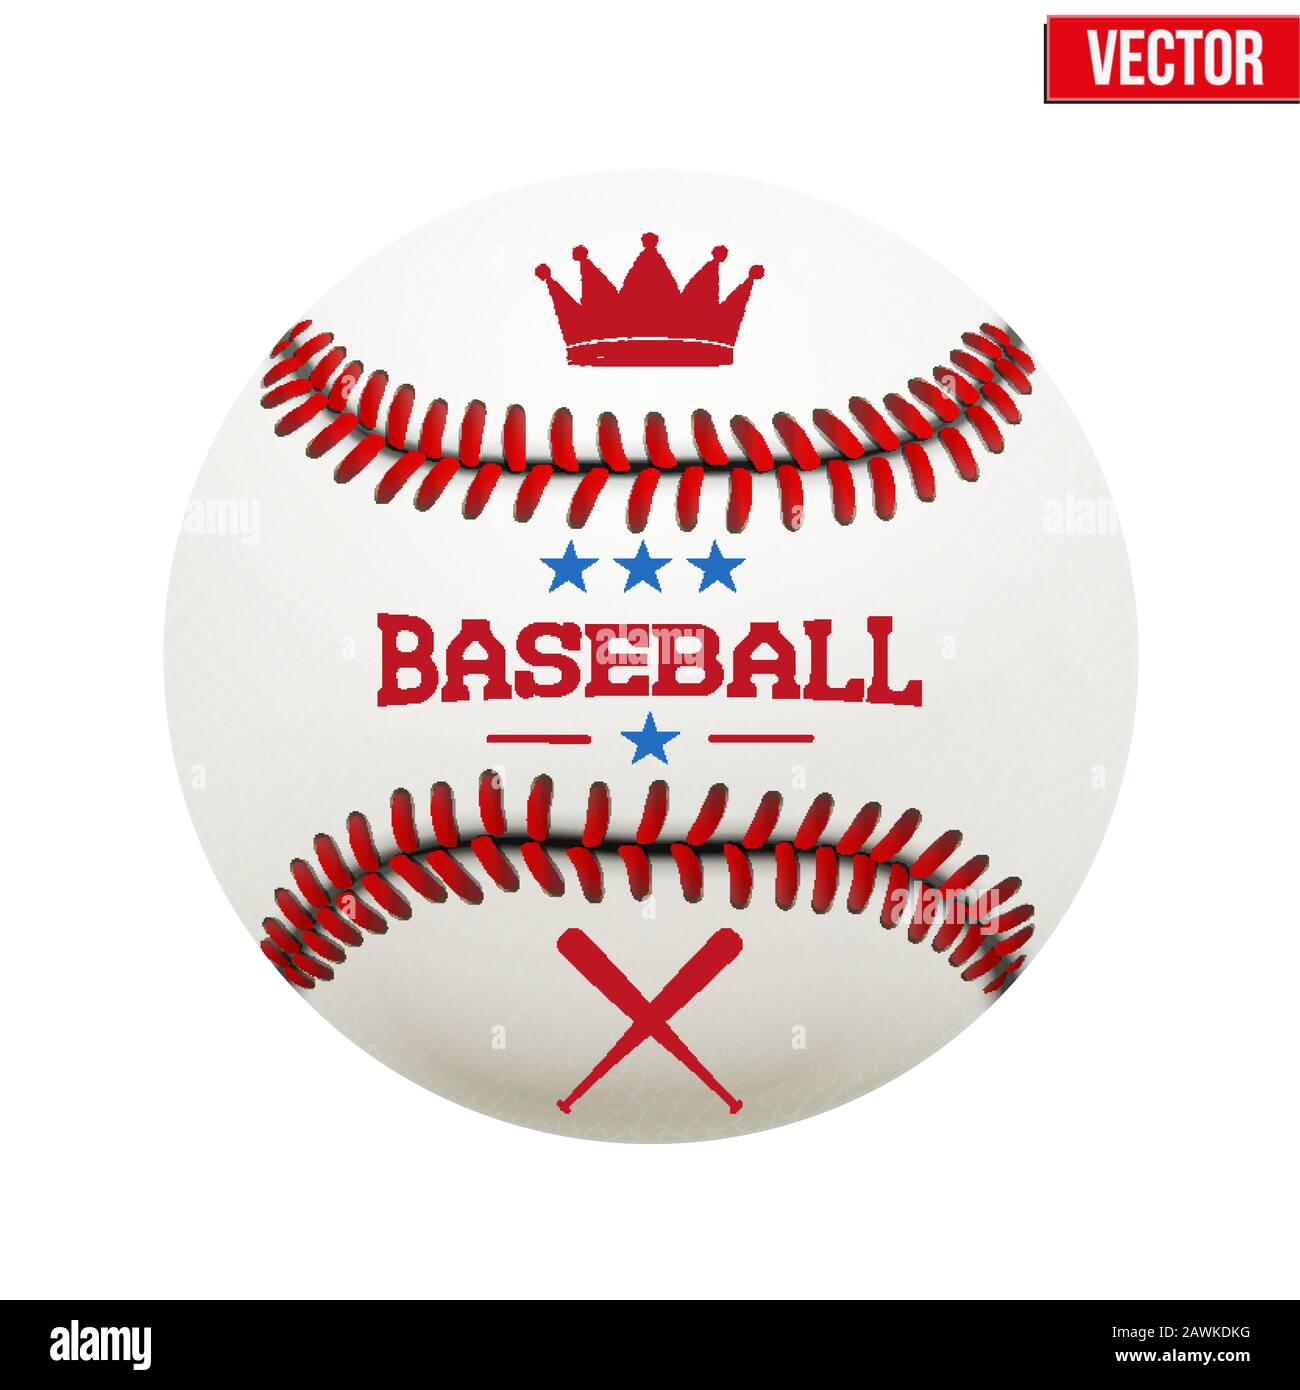 Vektor-Illustration von Baseball-Lederball Stock Vektor